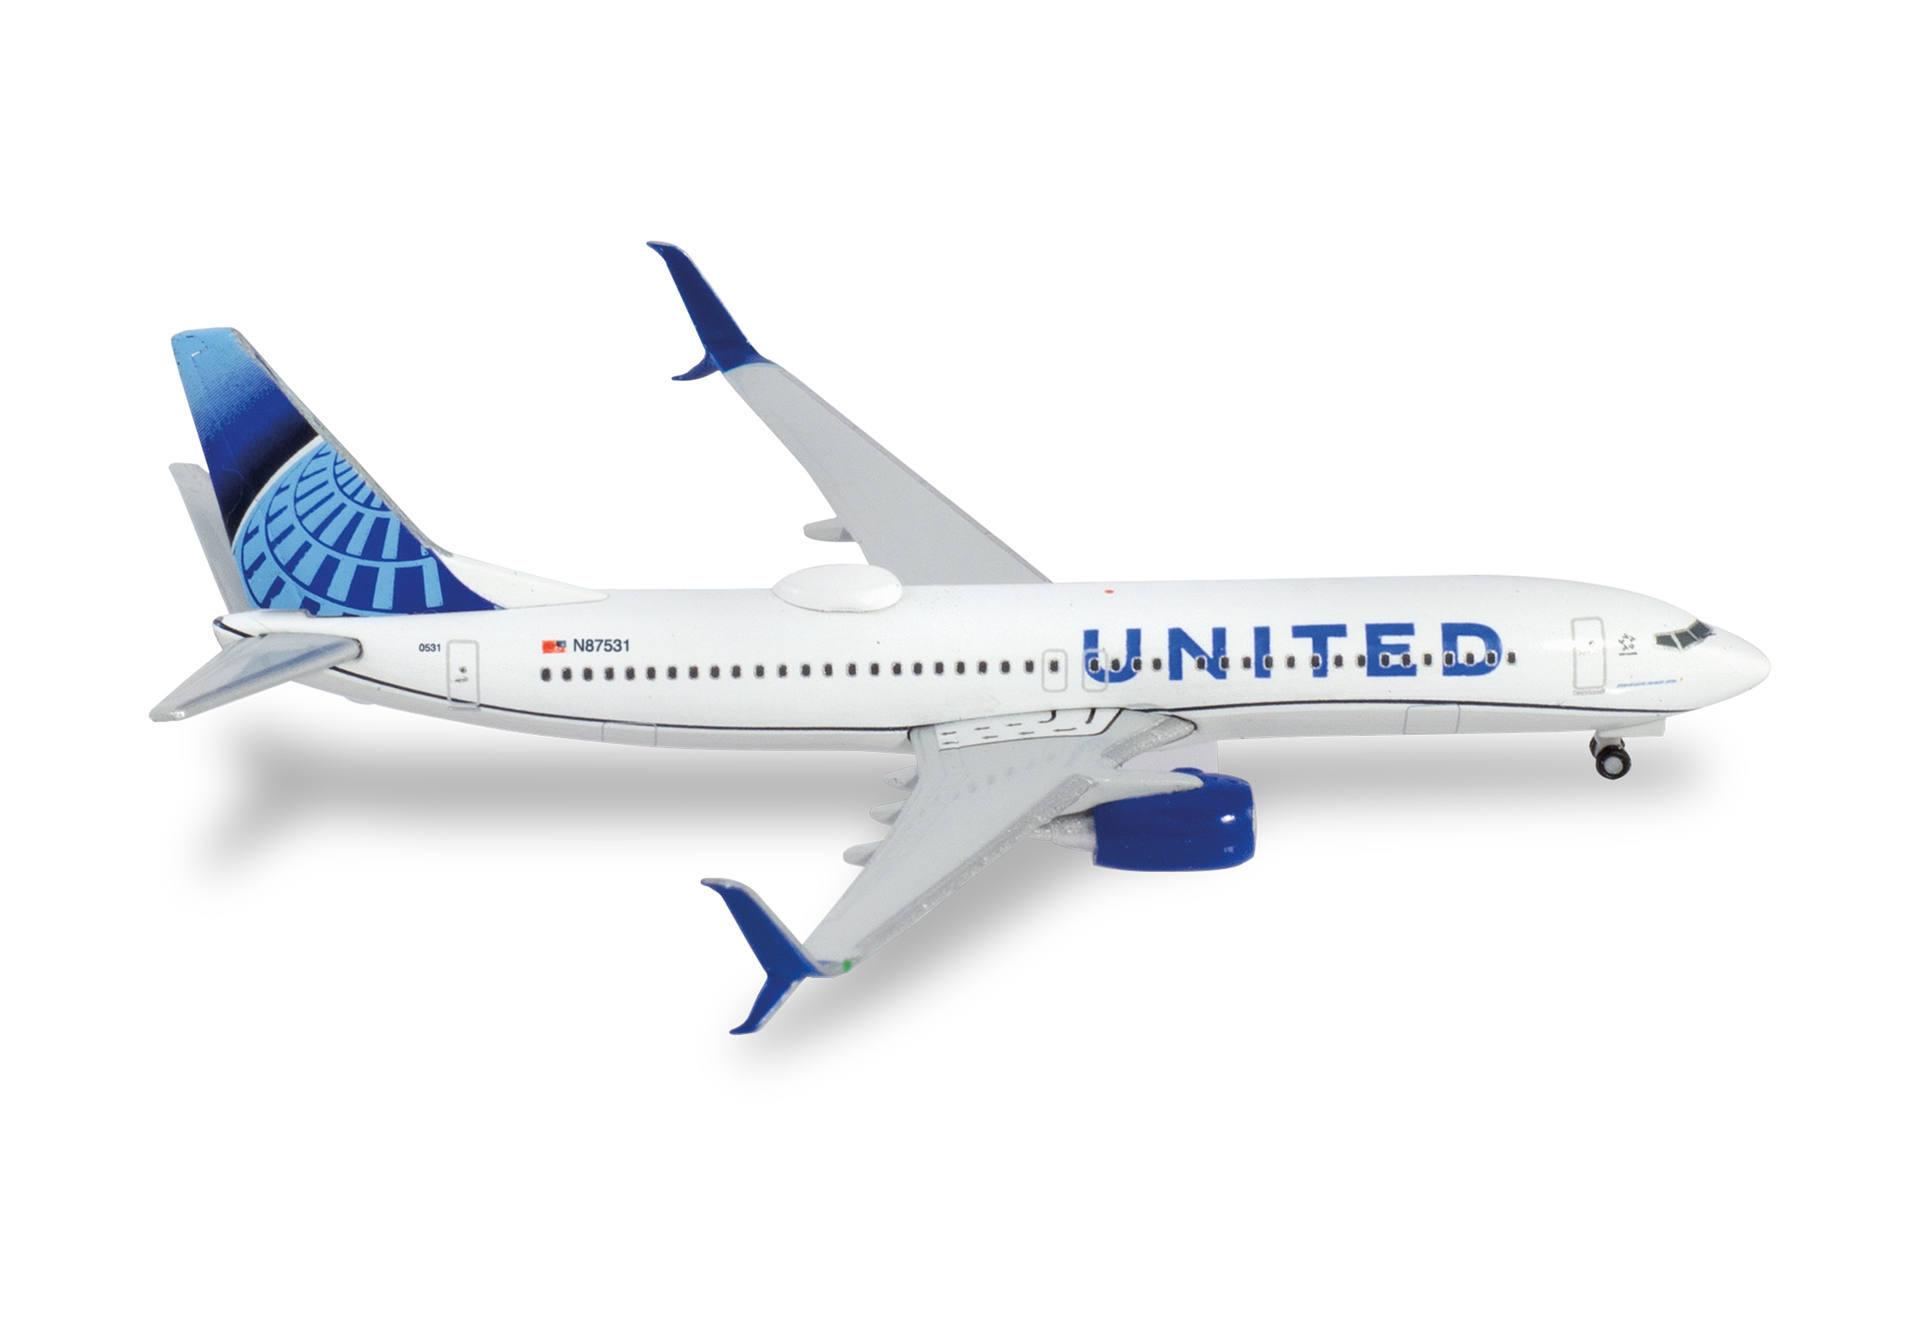 United Airlines Boeing 737-800 – N87531